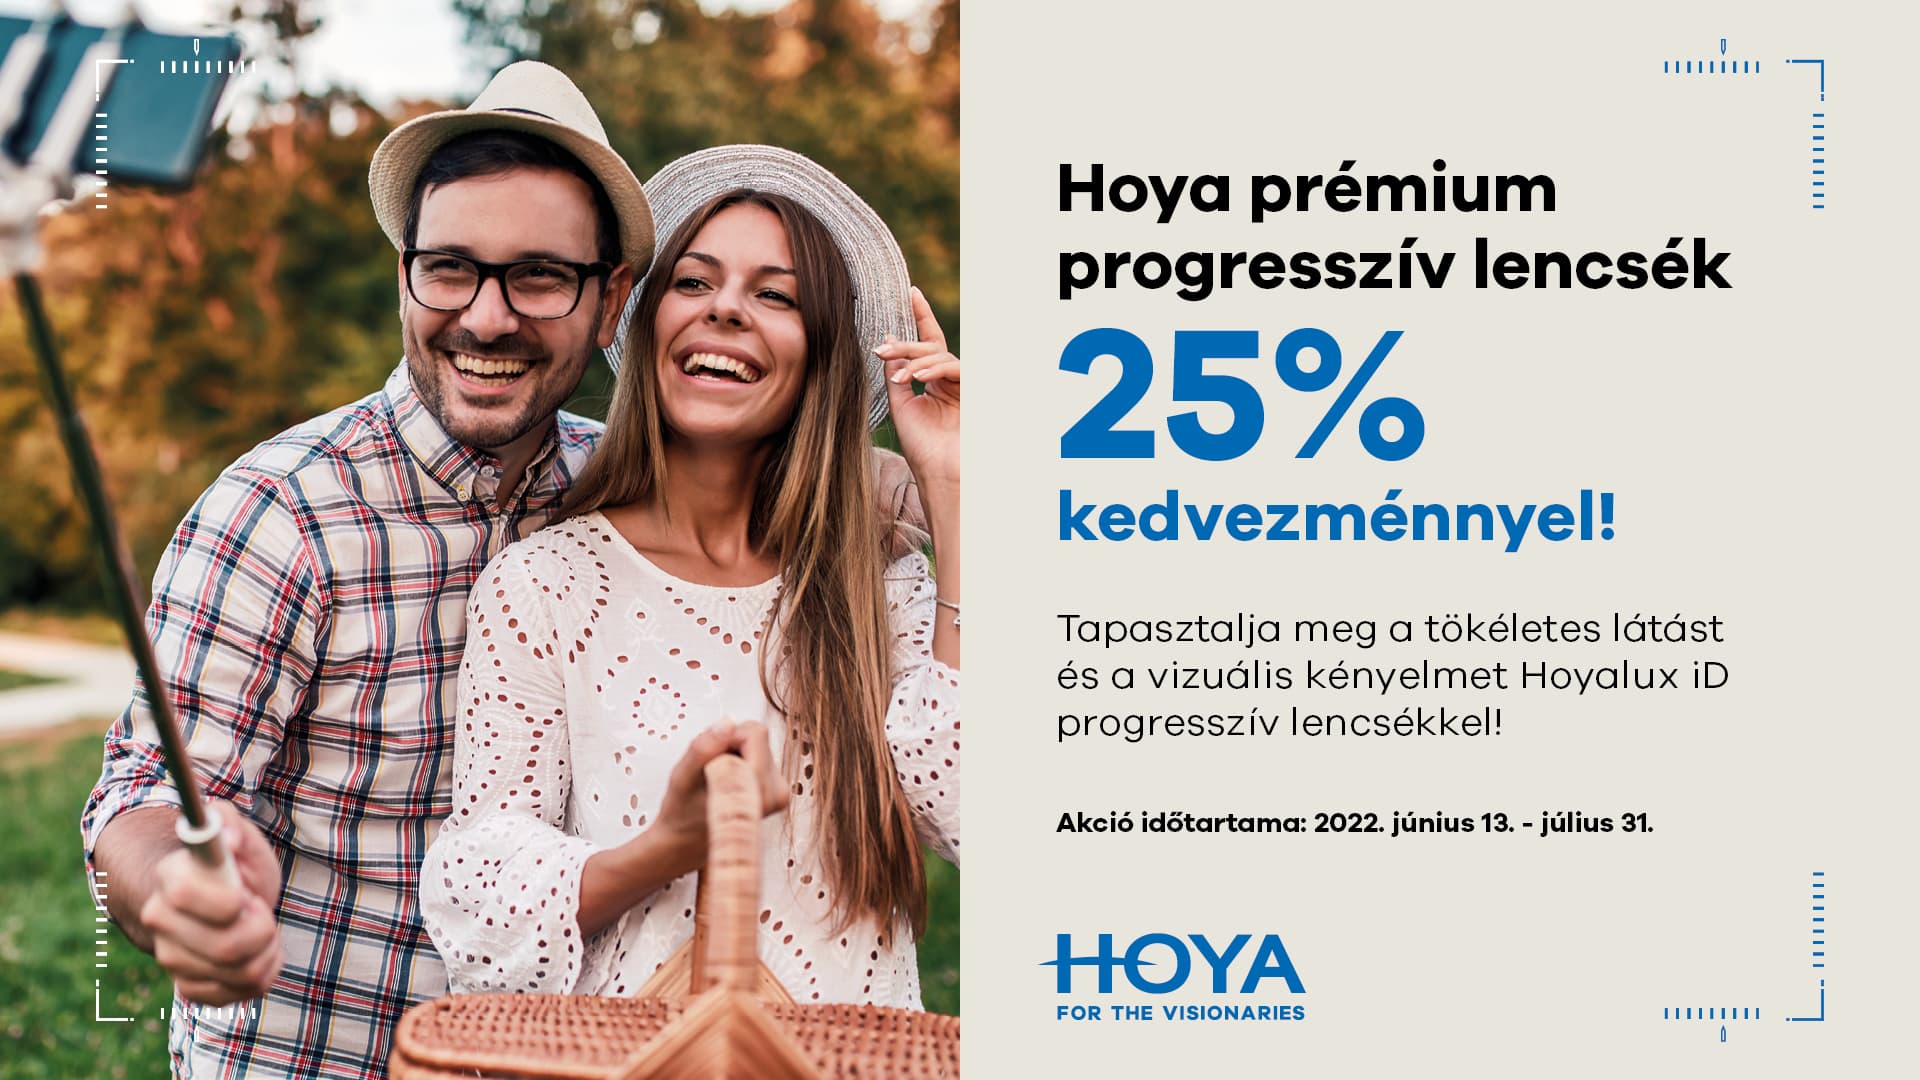 Hoya prémium progresszív lencsék 25% kedvezménnyel!